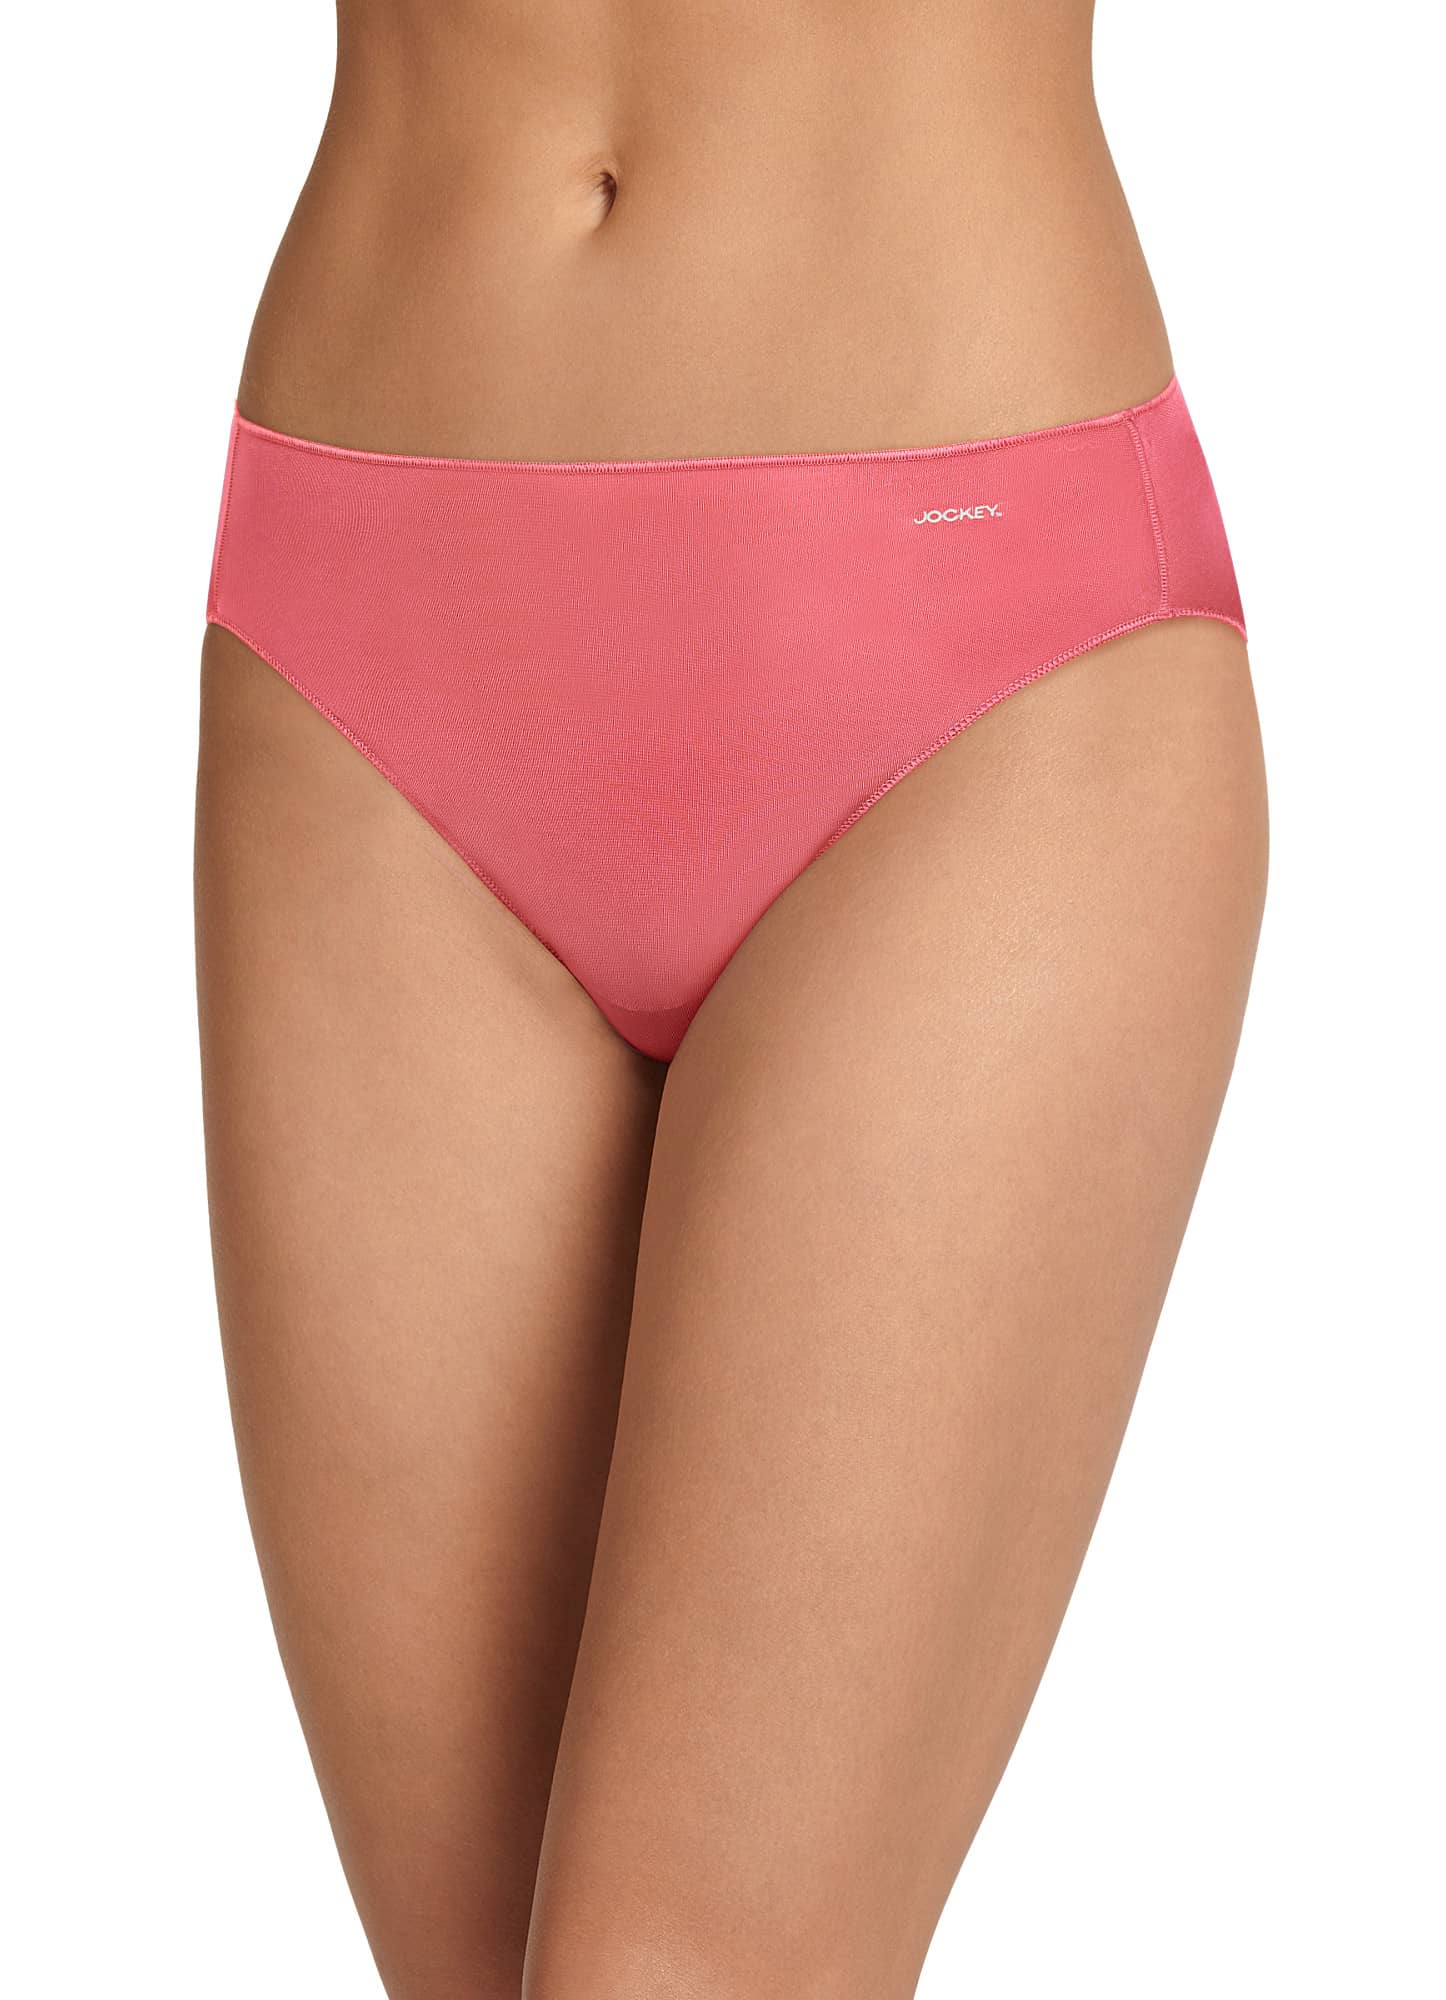 Jockey Women's Underwear No Panty Line Promise Tactel Lace Bikini 